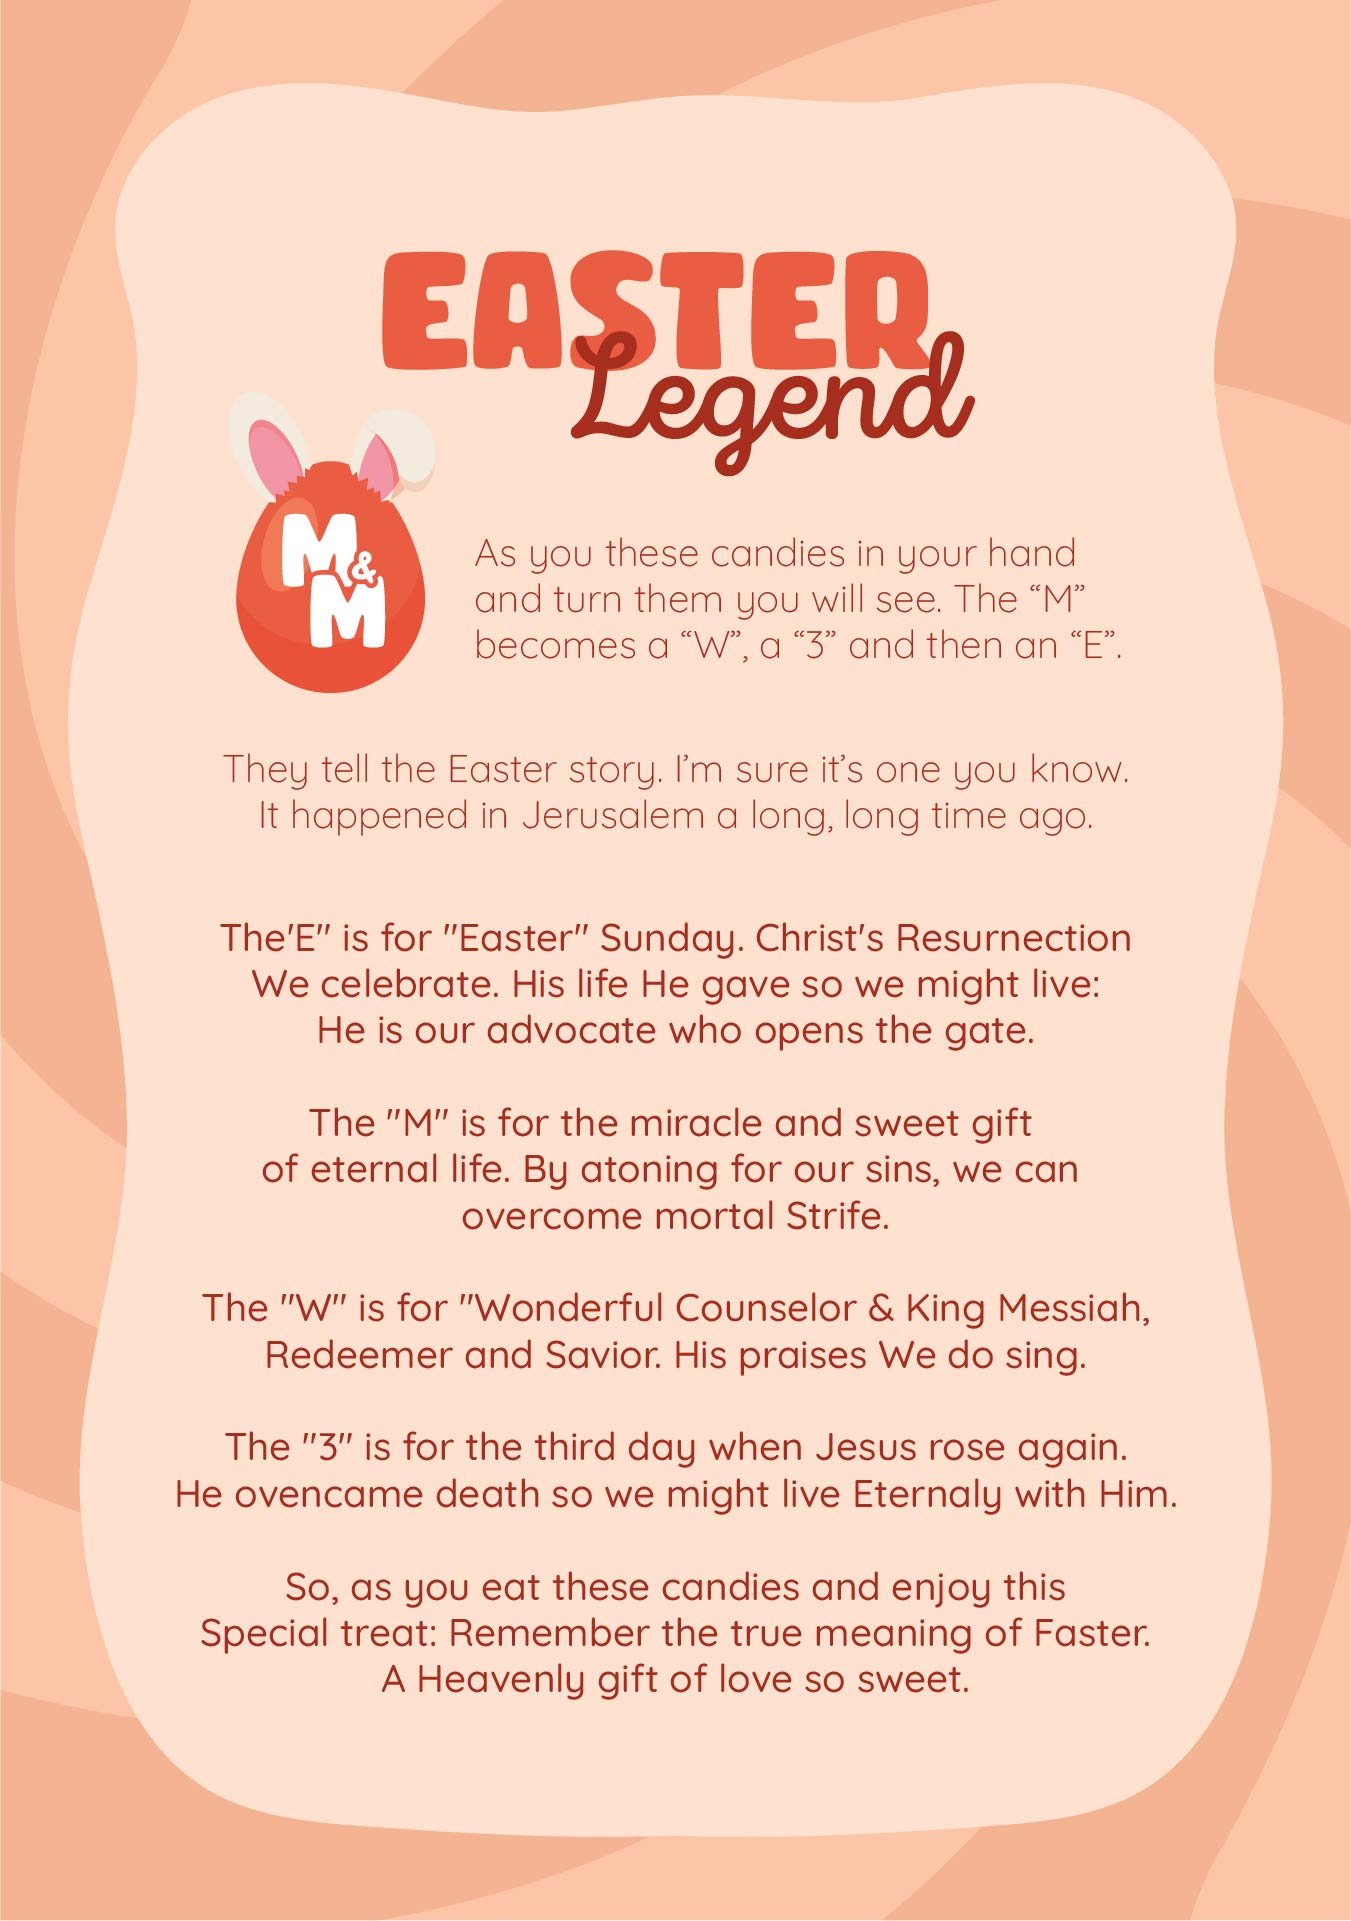 M Easter Legend Poem